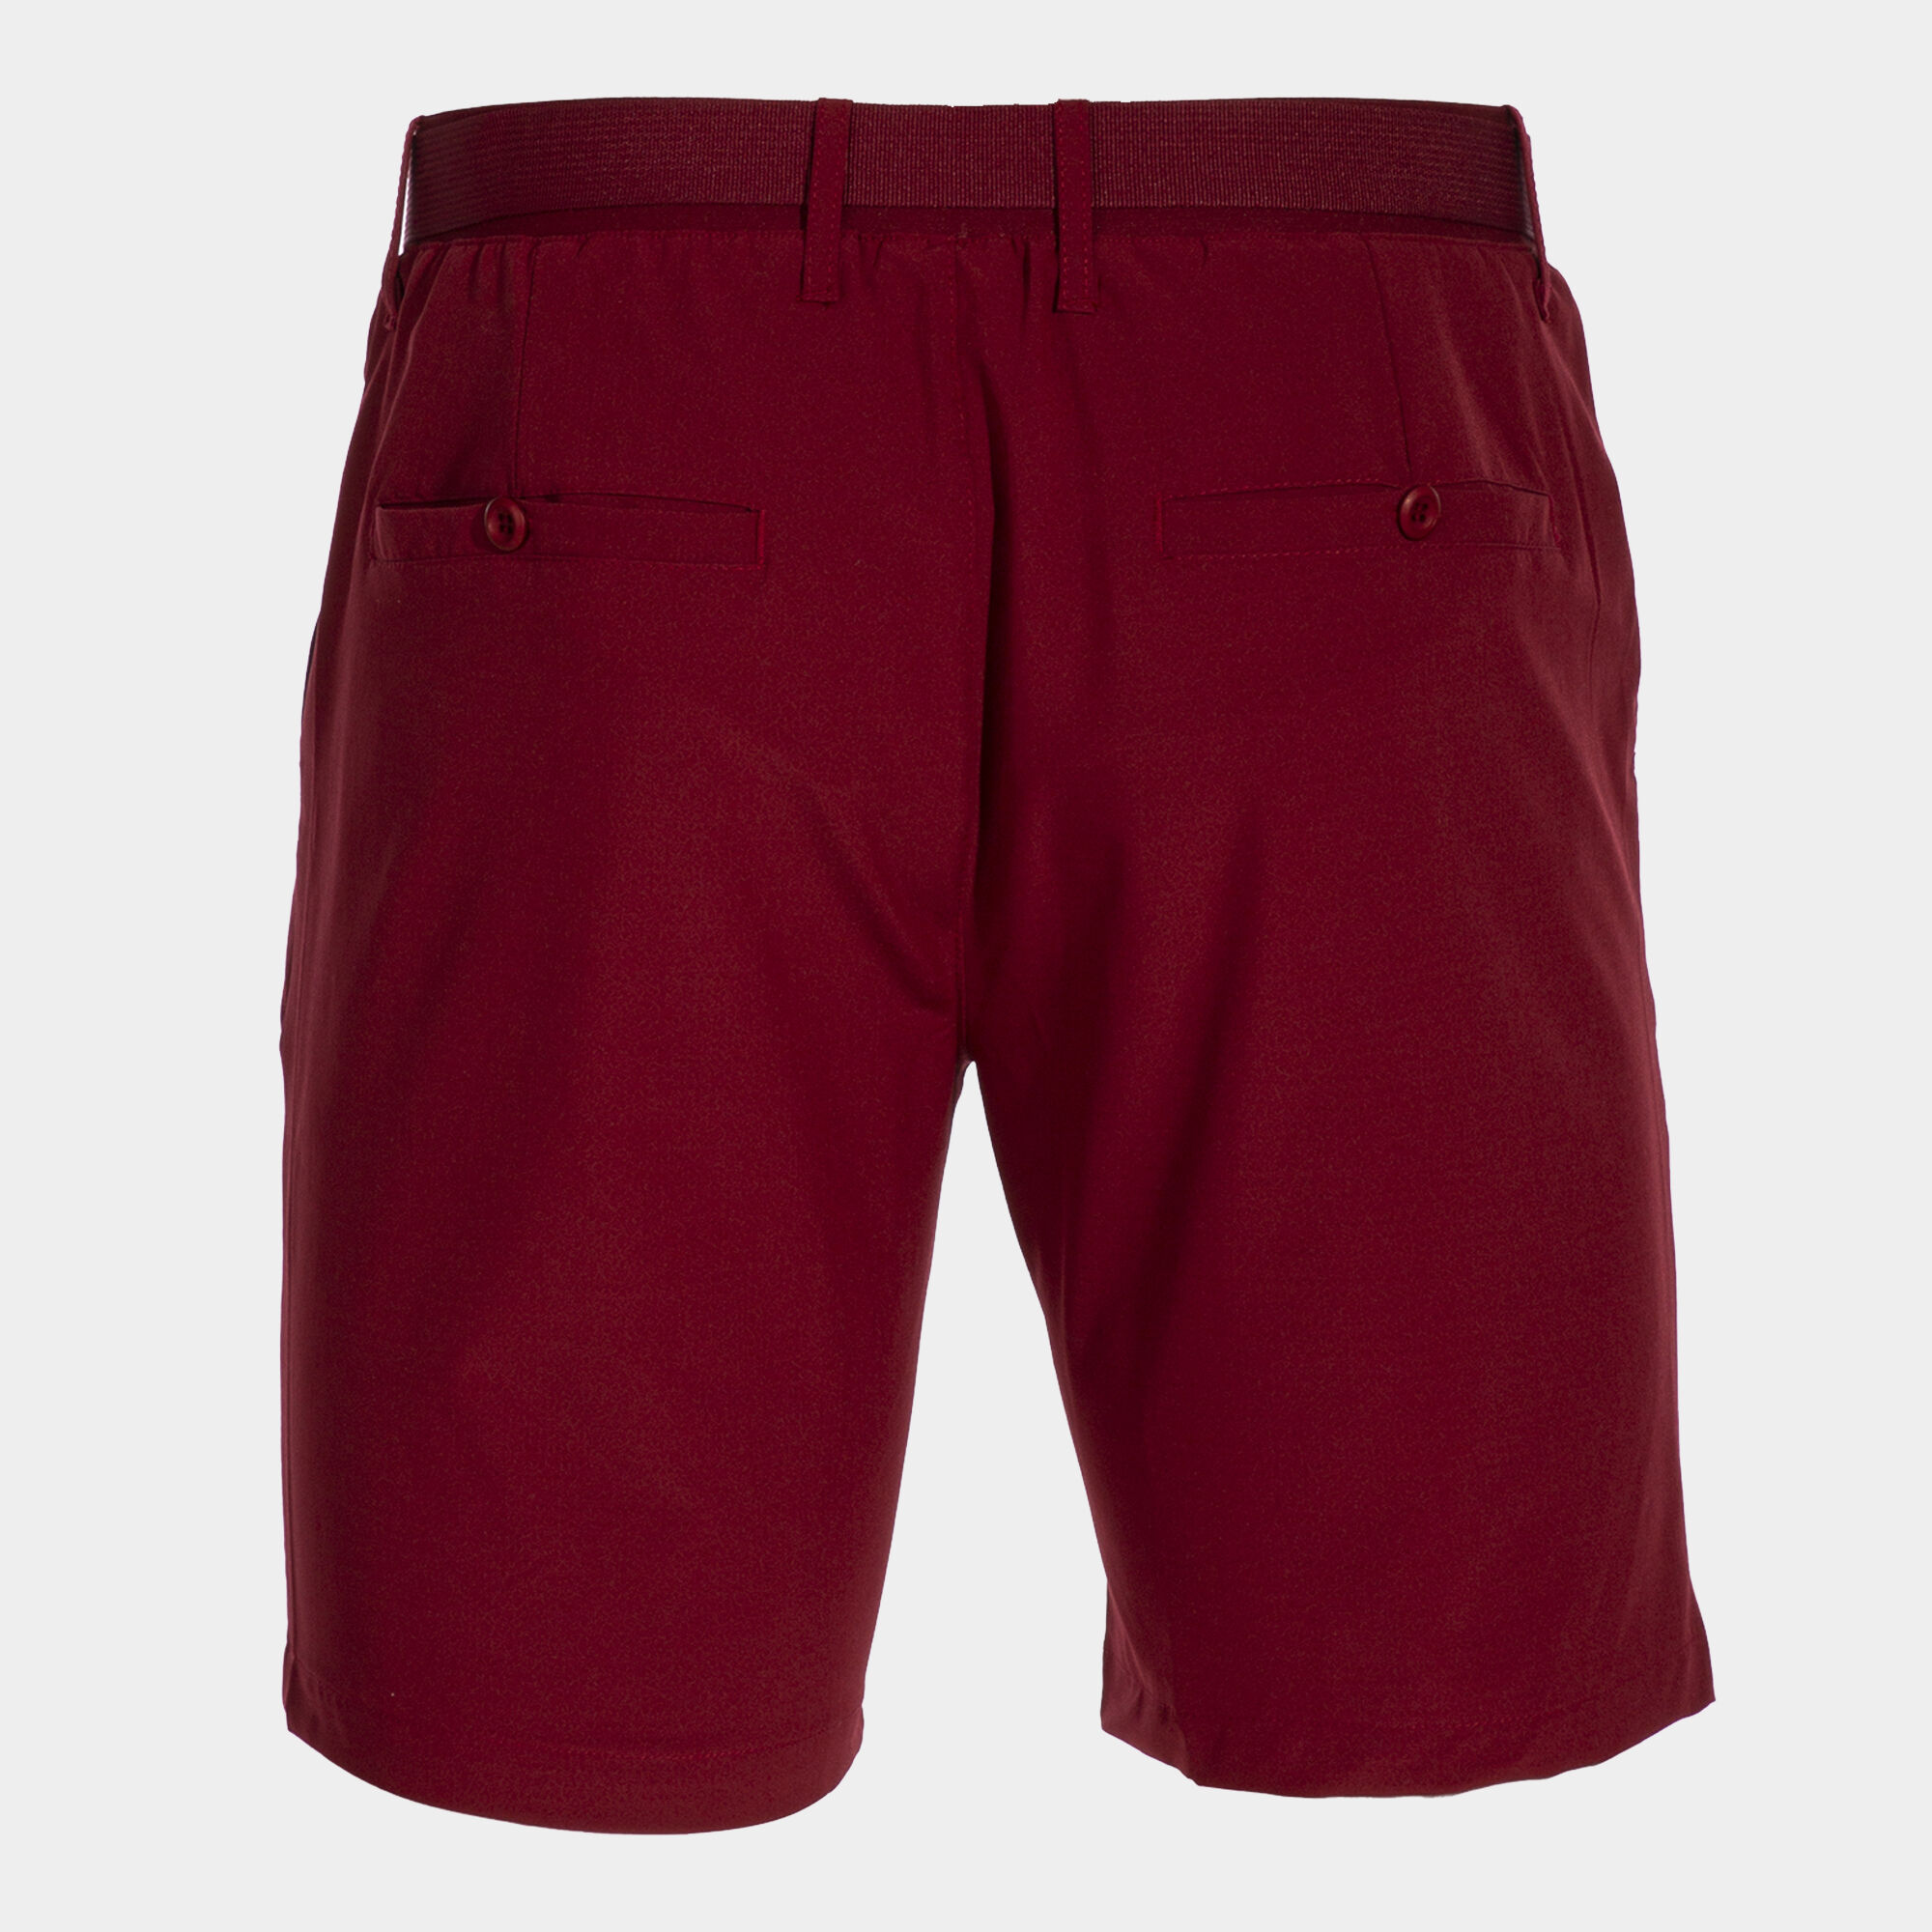 Bermuda shorts man Pasarela III burgundy